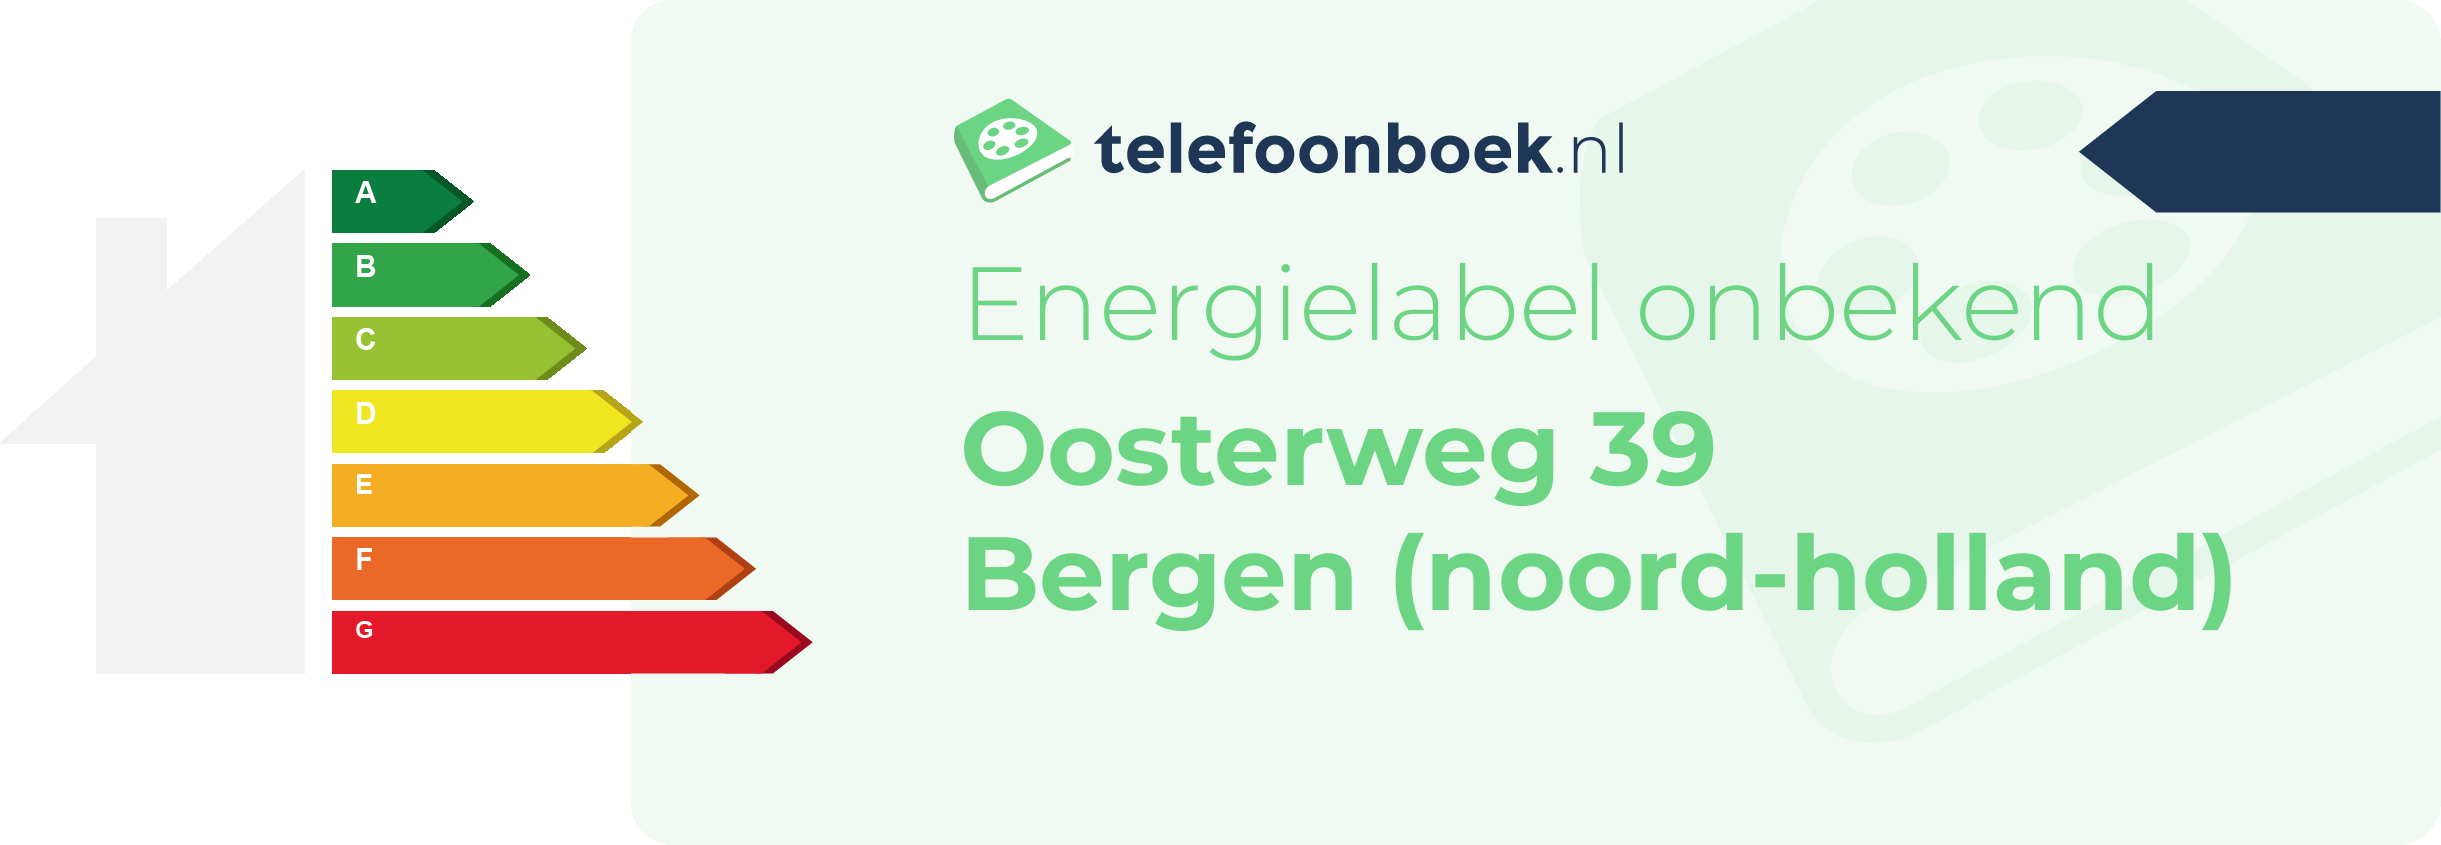 Energielabel Oosterweg 39 Bergen (Noord-Holland)